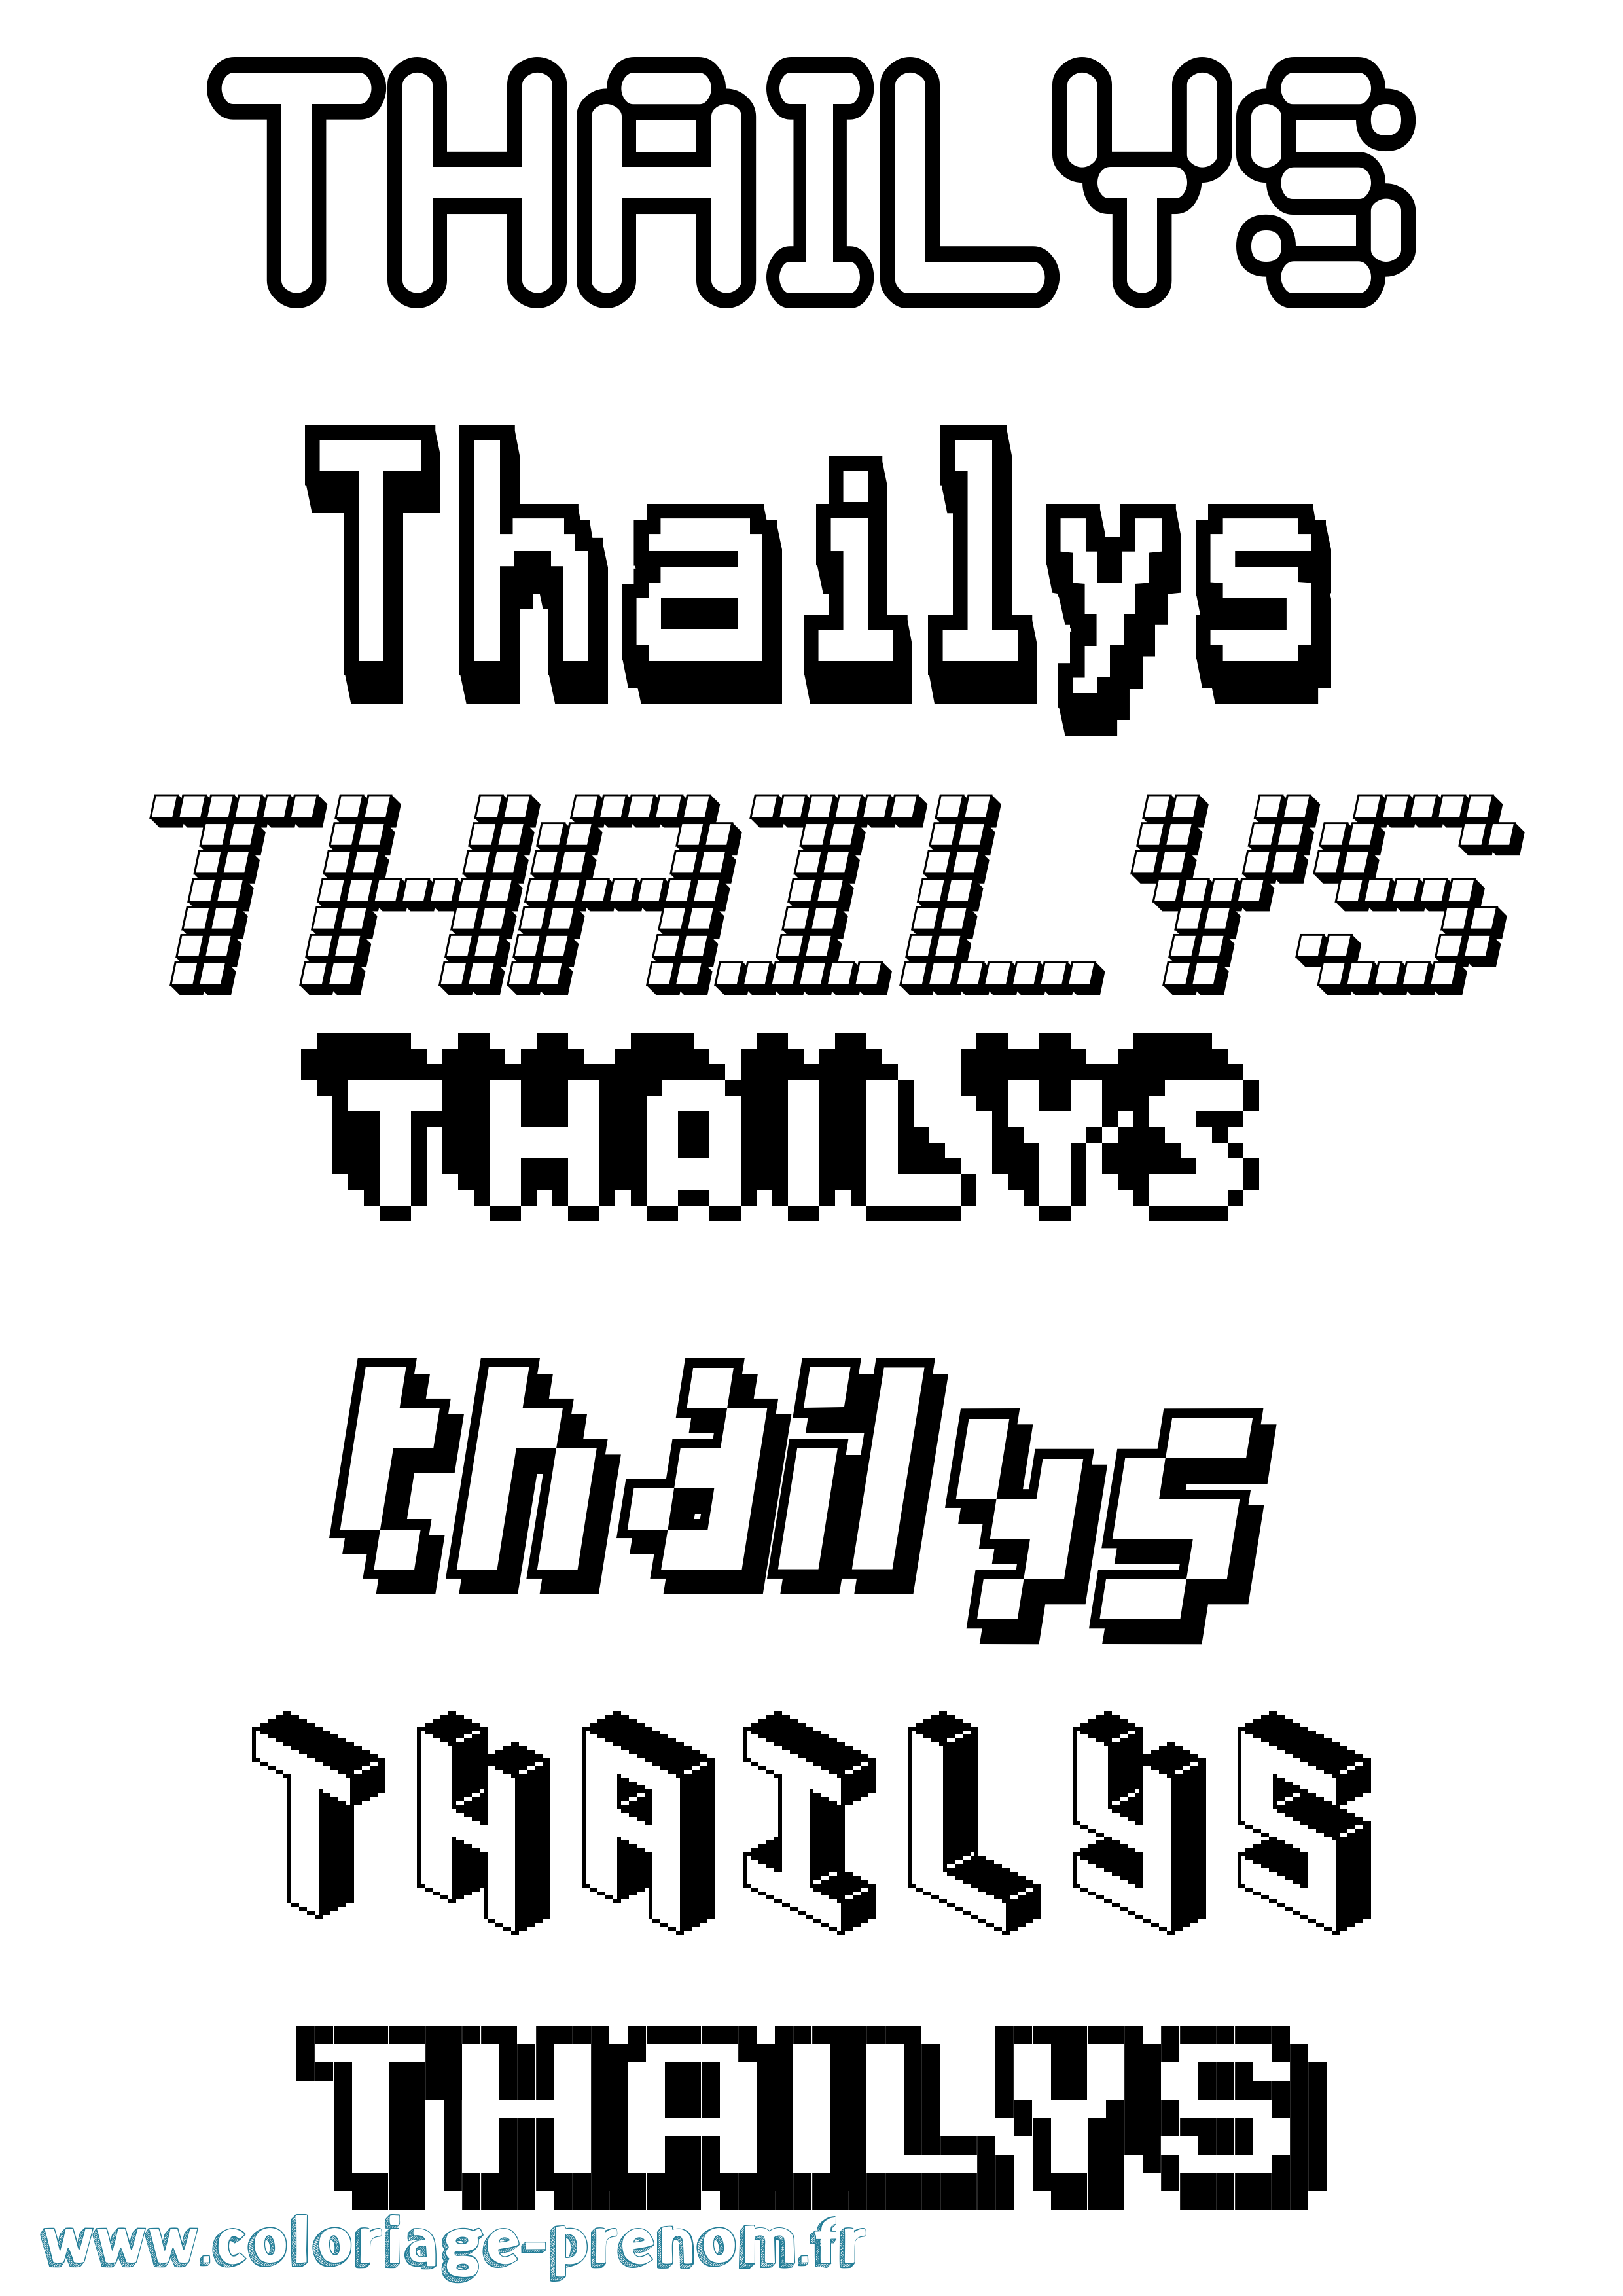 Coloriage prénom Thailys Pixel